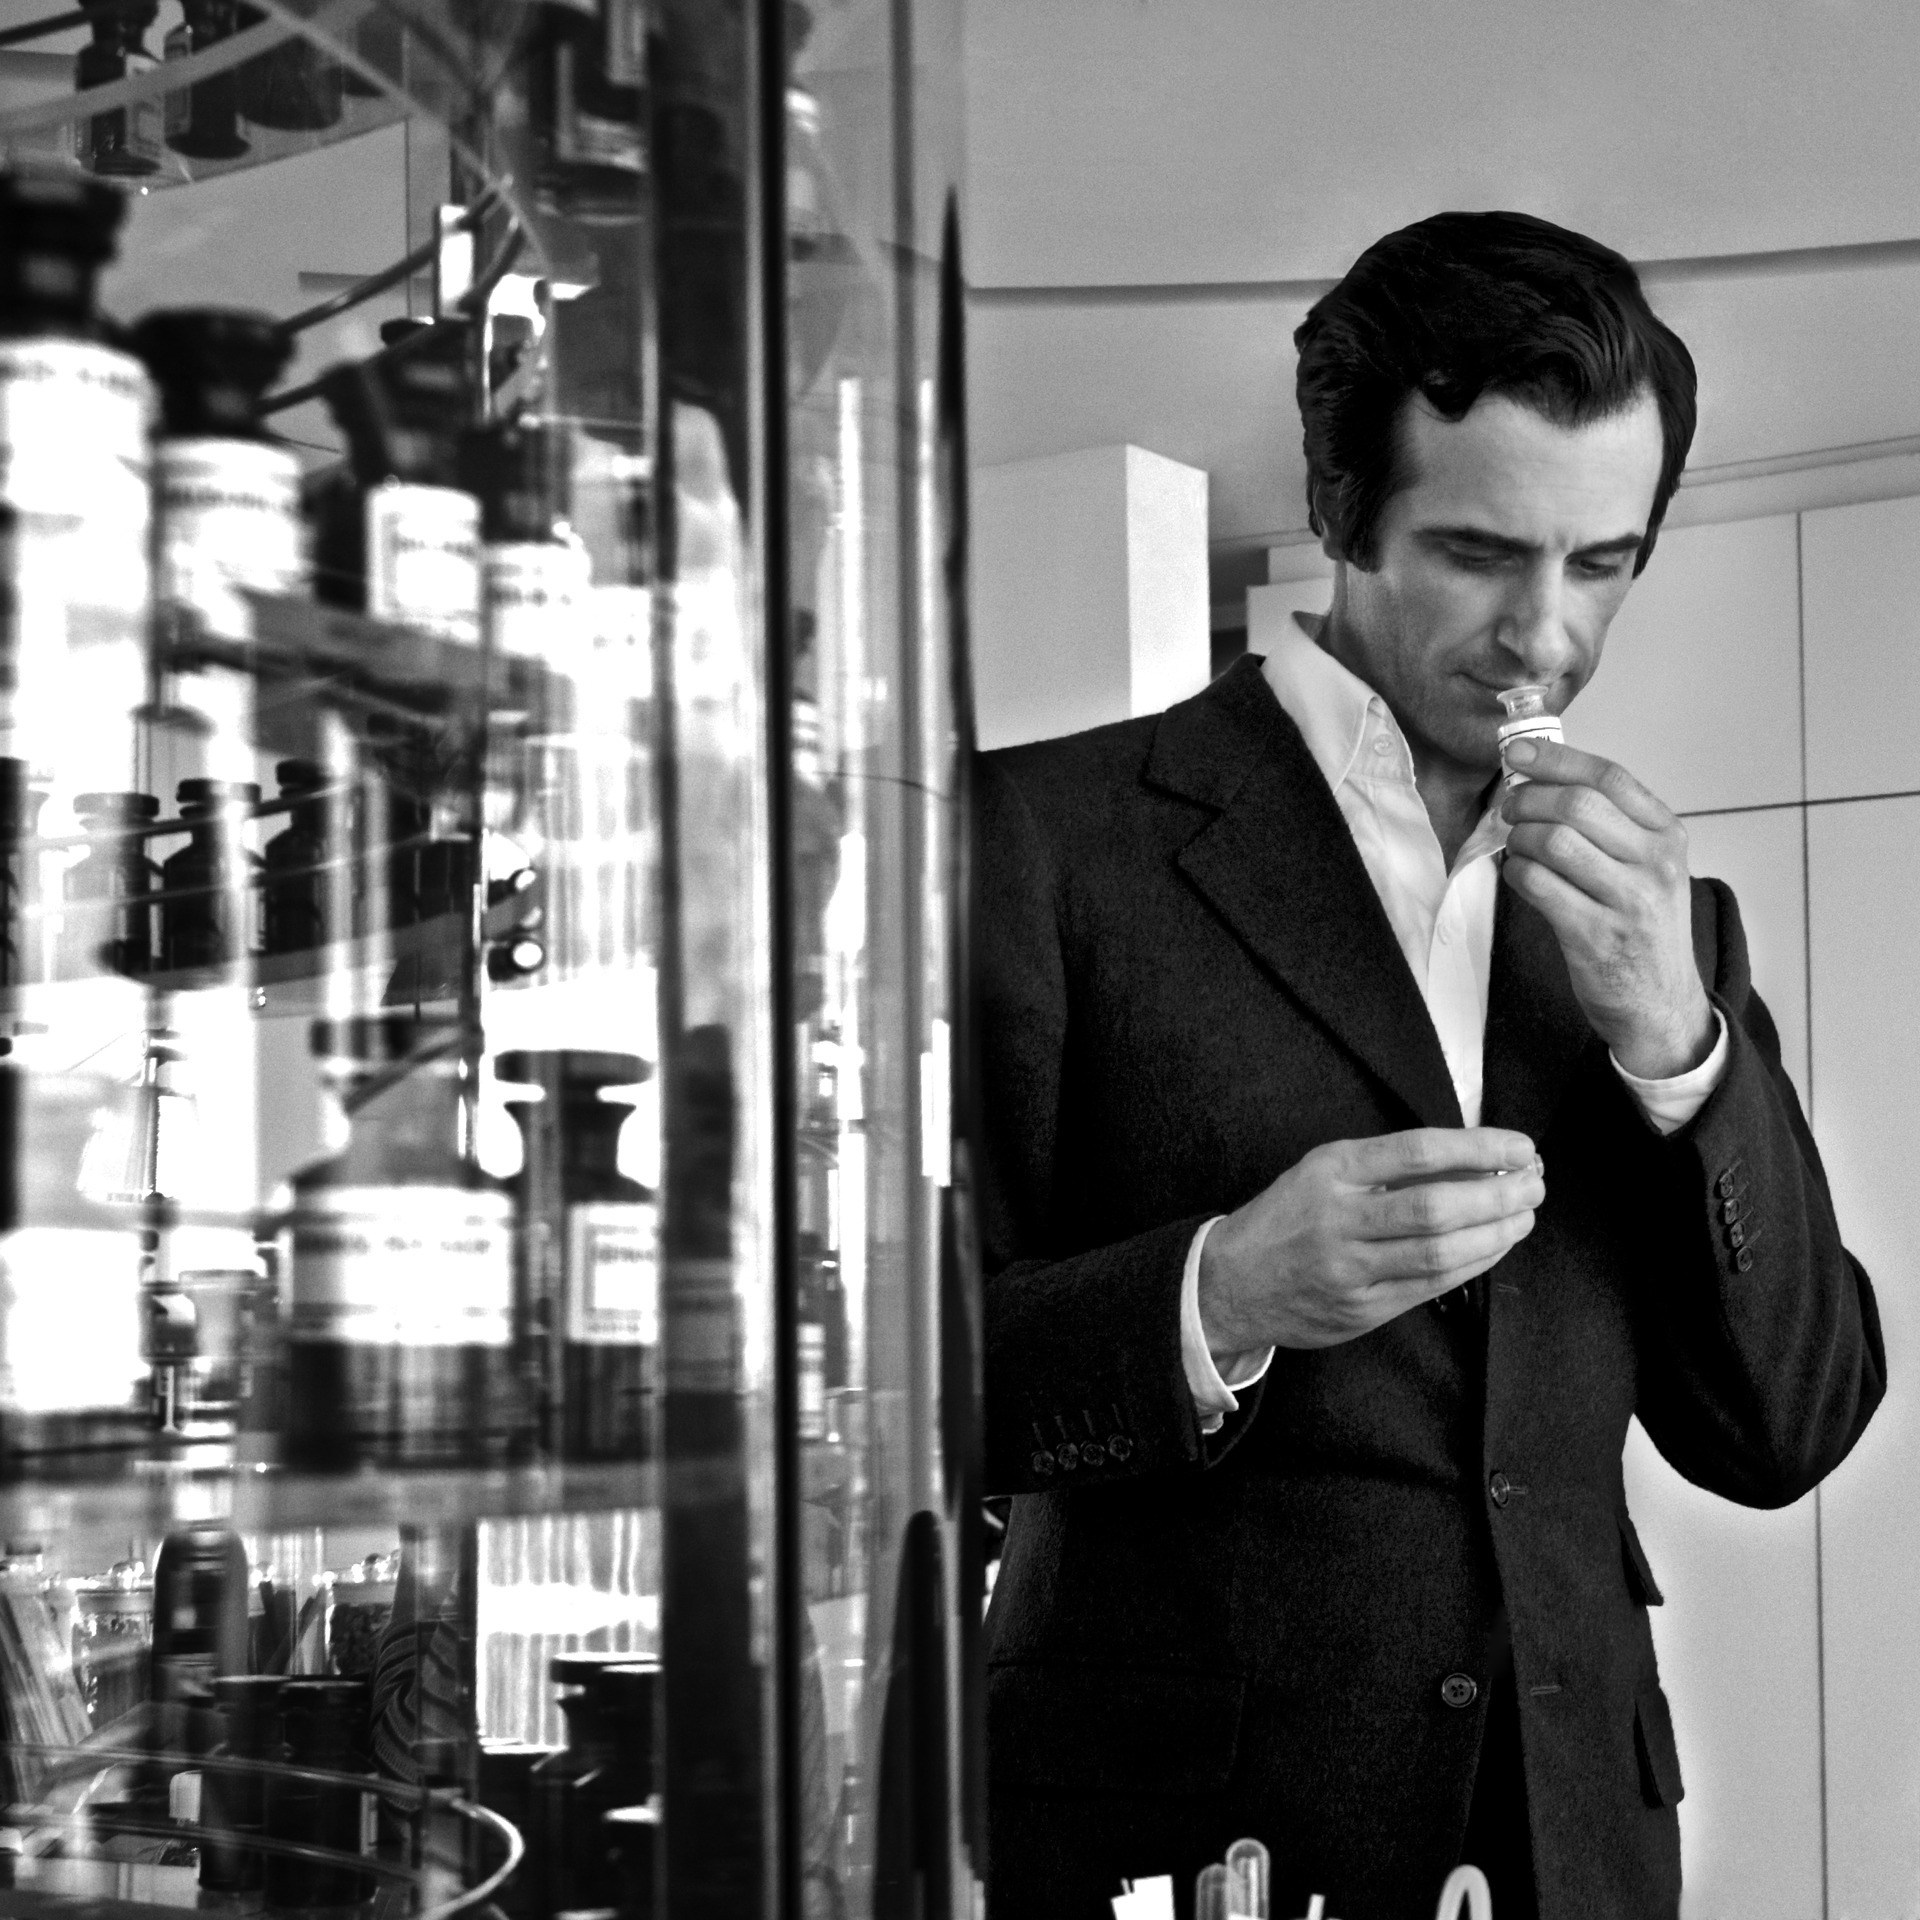 Olivier Polge, el perfumista de Chanel que iba para pianista: "La perfumería es difícil de entender, no se enseña en los colegios ni tiene lenguaje propio"